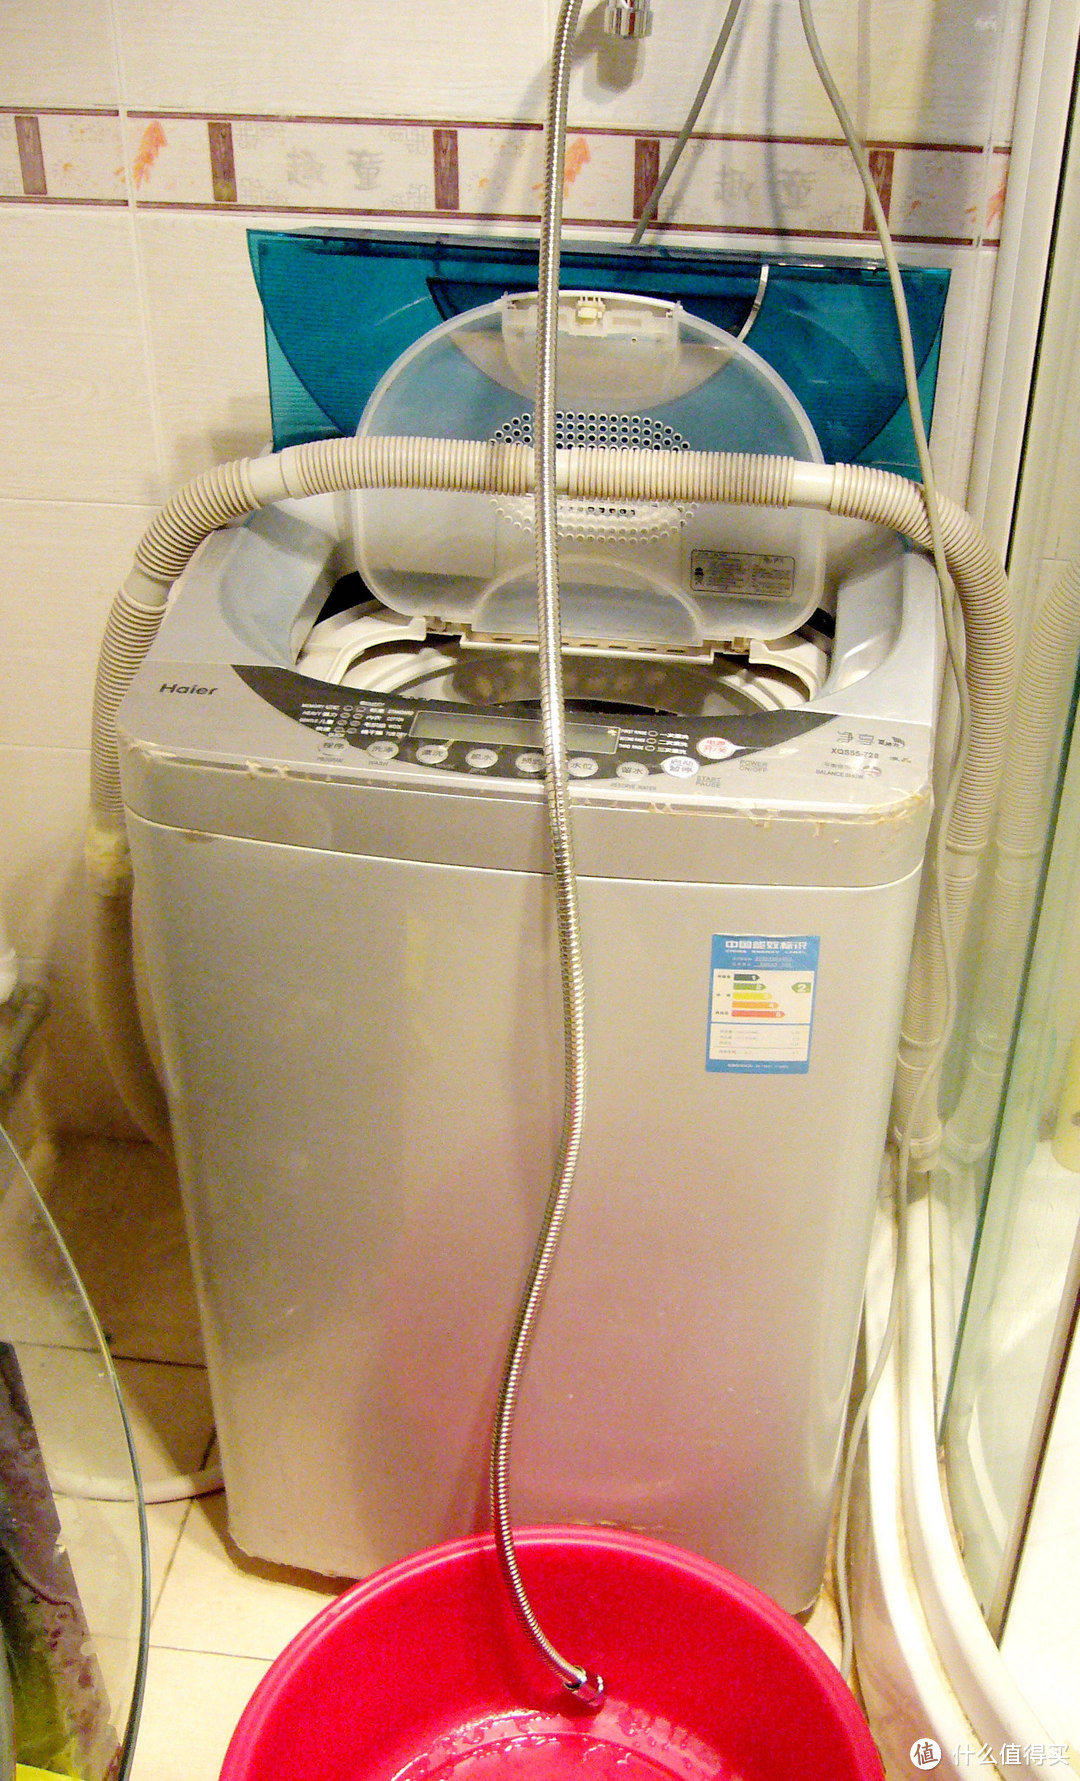 老牌热水器品牌的互联产品-康泉 KTWB60 云智能Wifi电热水器（60升）测评